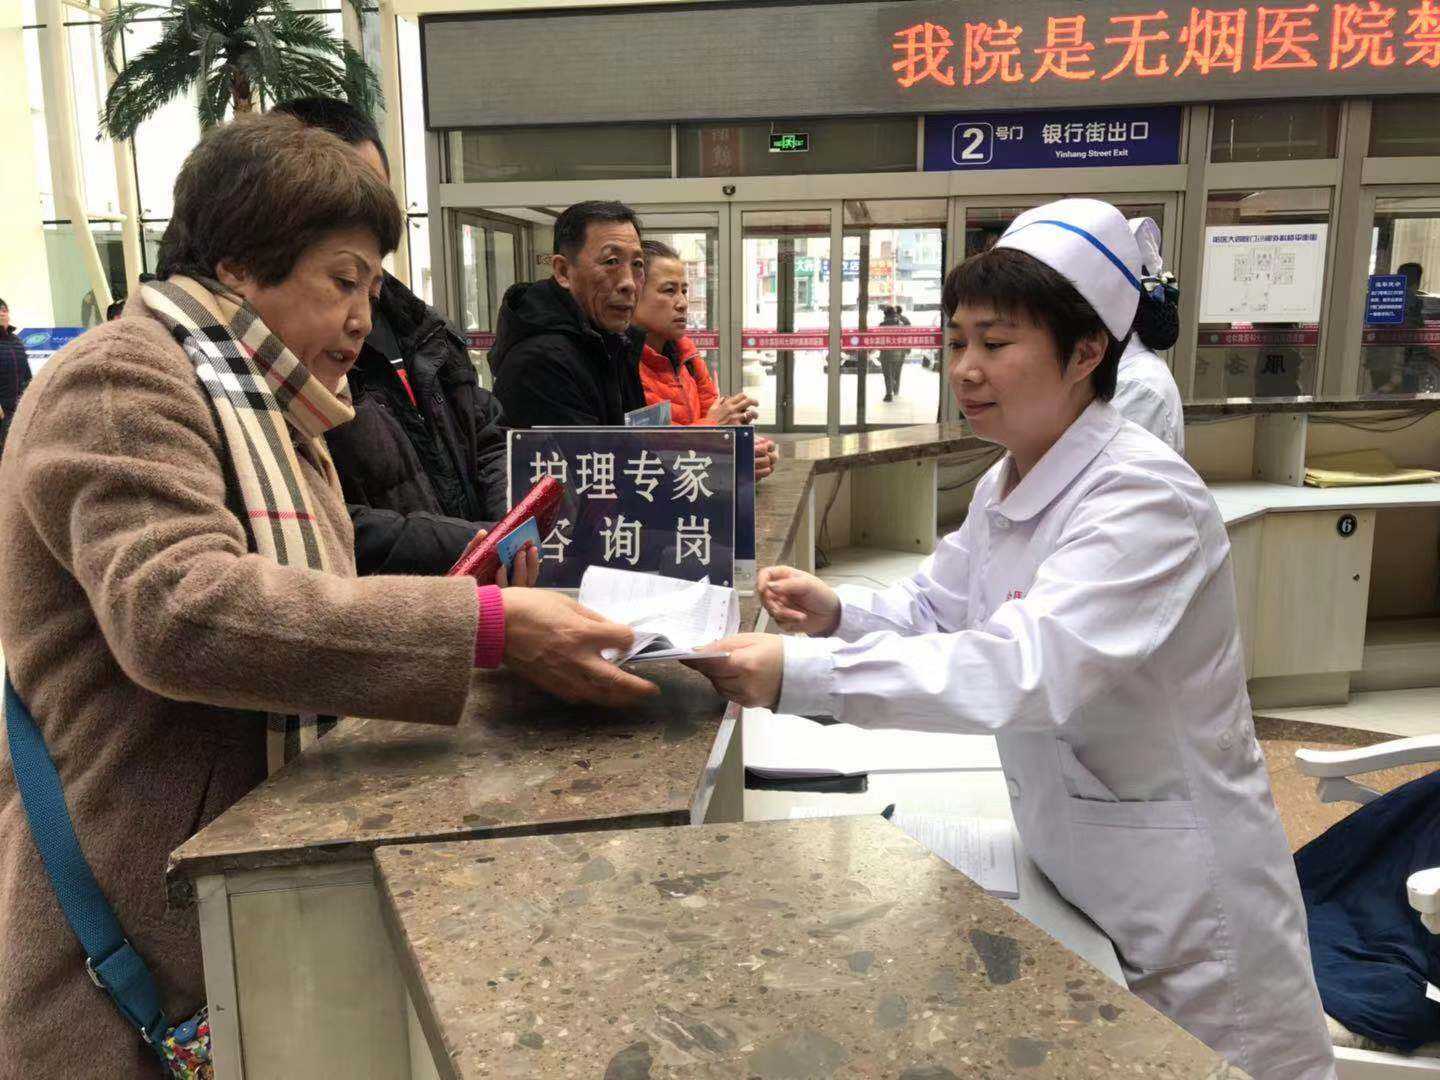 包含北京大学口腔医院跑腿预约挂号，办事效率高的词条